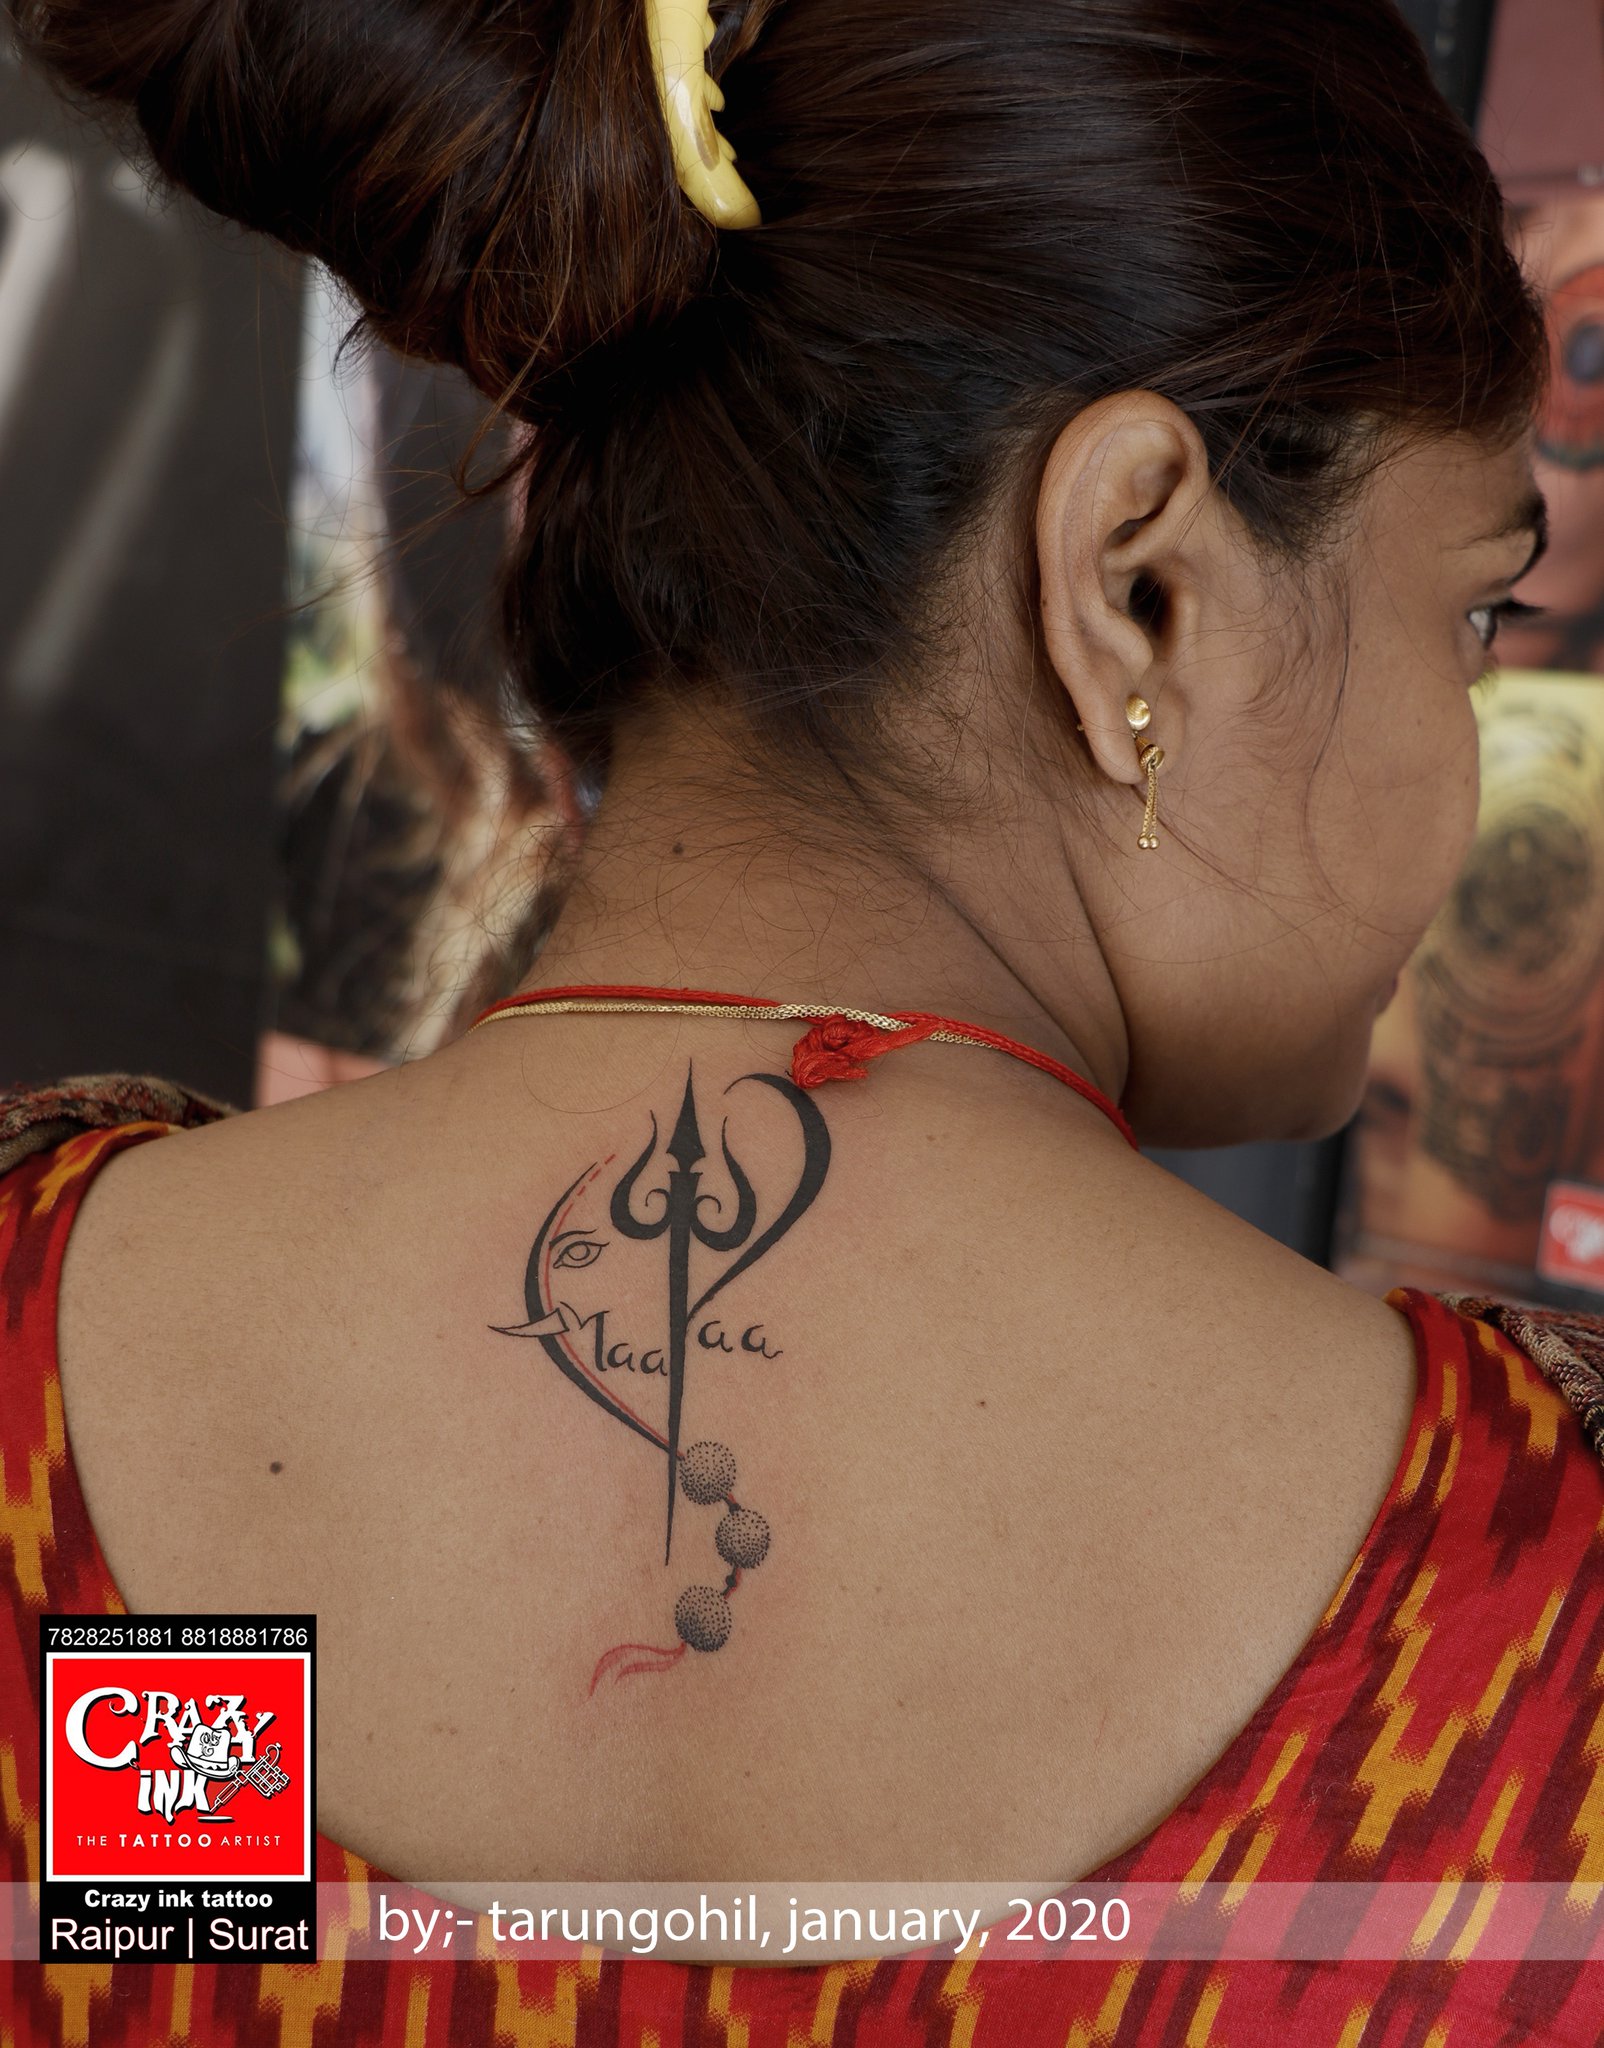 Maa Paa  Shiva tattoo design Small tattoos Om tattoo